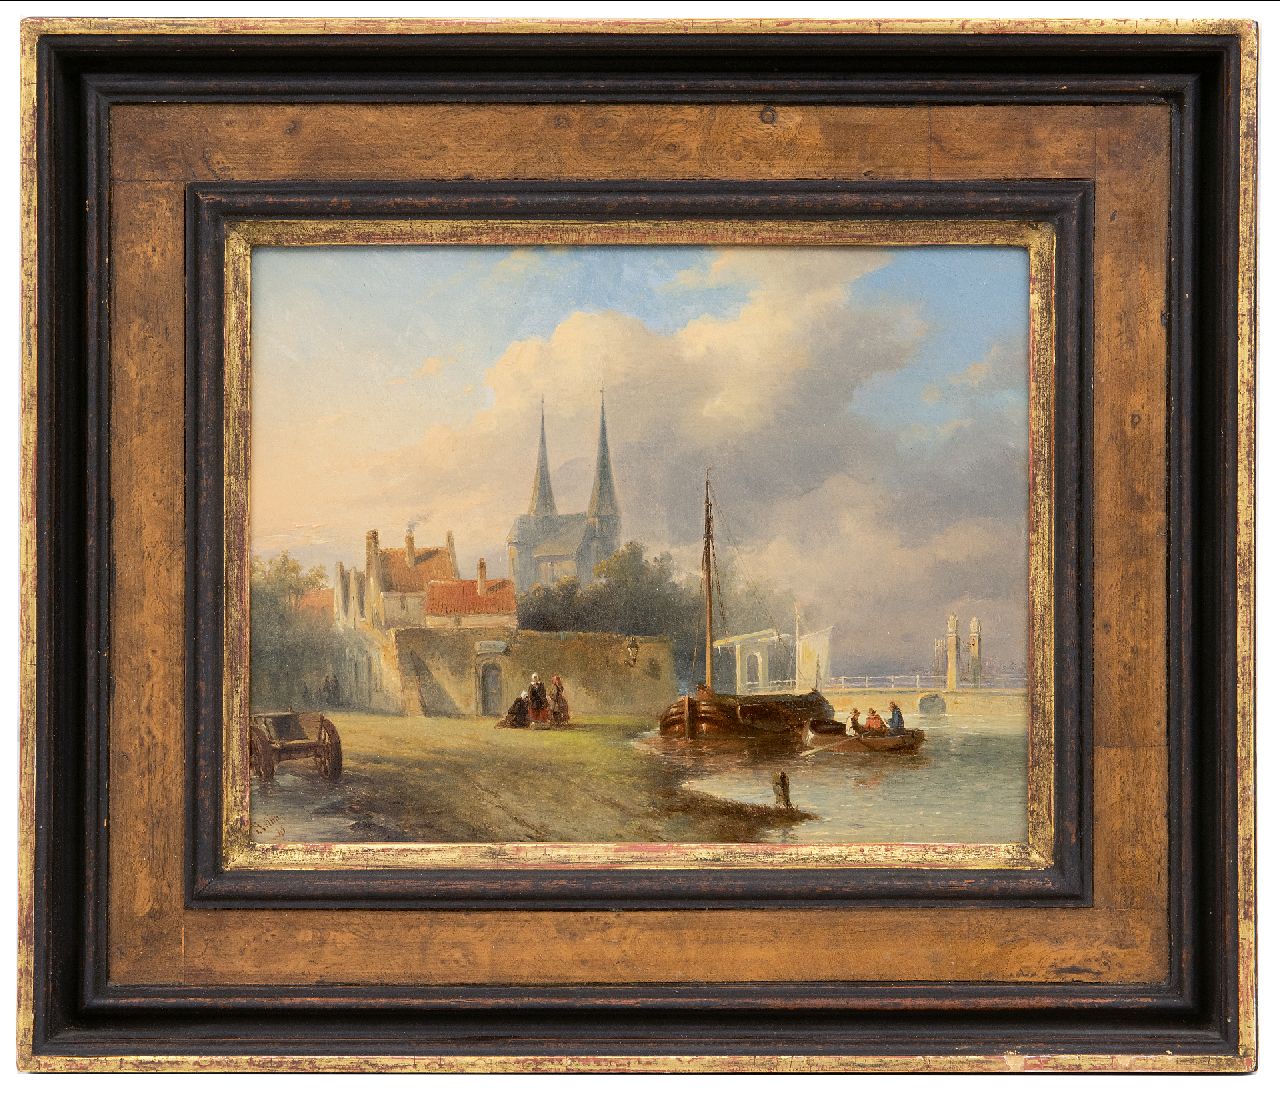 Vertin P.G.  | Petrus Gerardus Vertin, Hollands stadje aan een rivier, olieverf op paneel 19,4 x 25,6 cm, gesigneerd linksonder en gedateerd '45